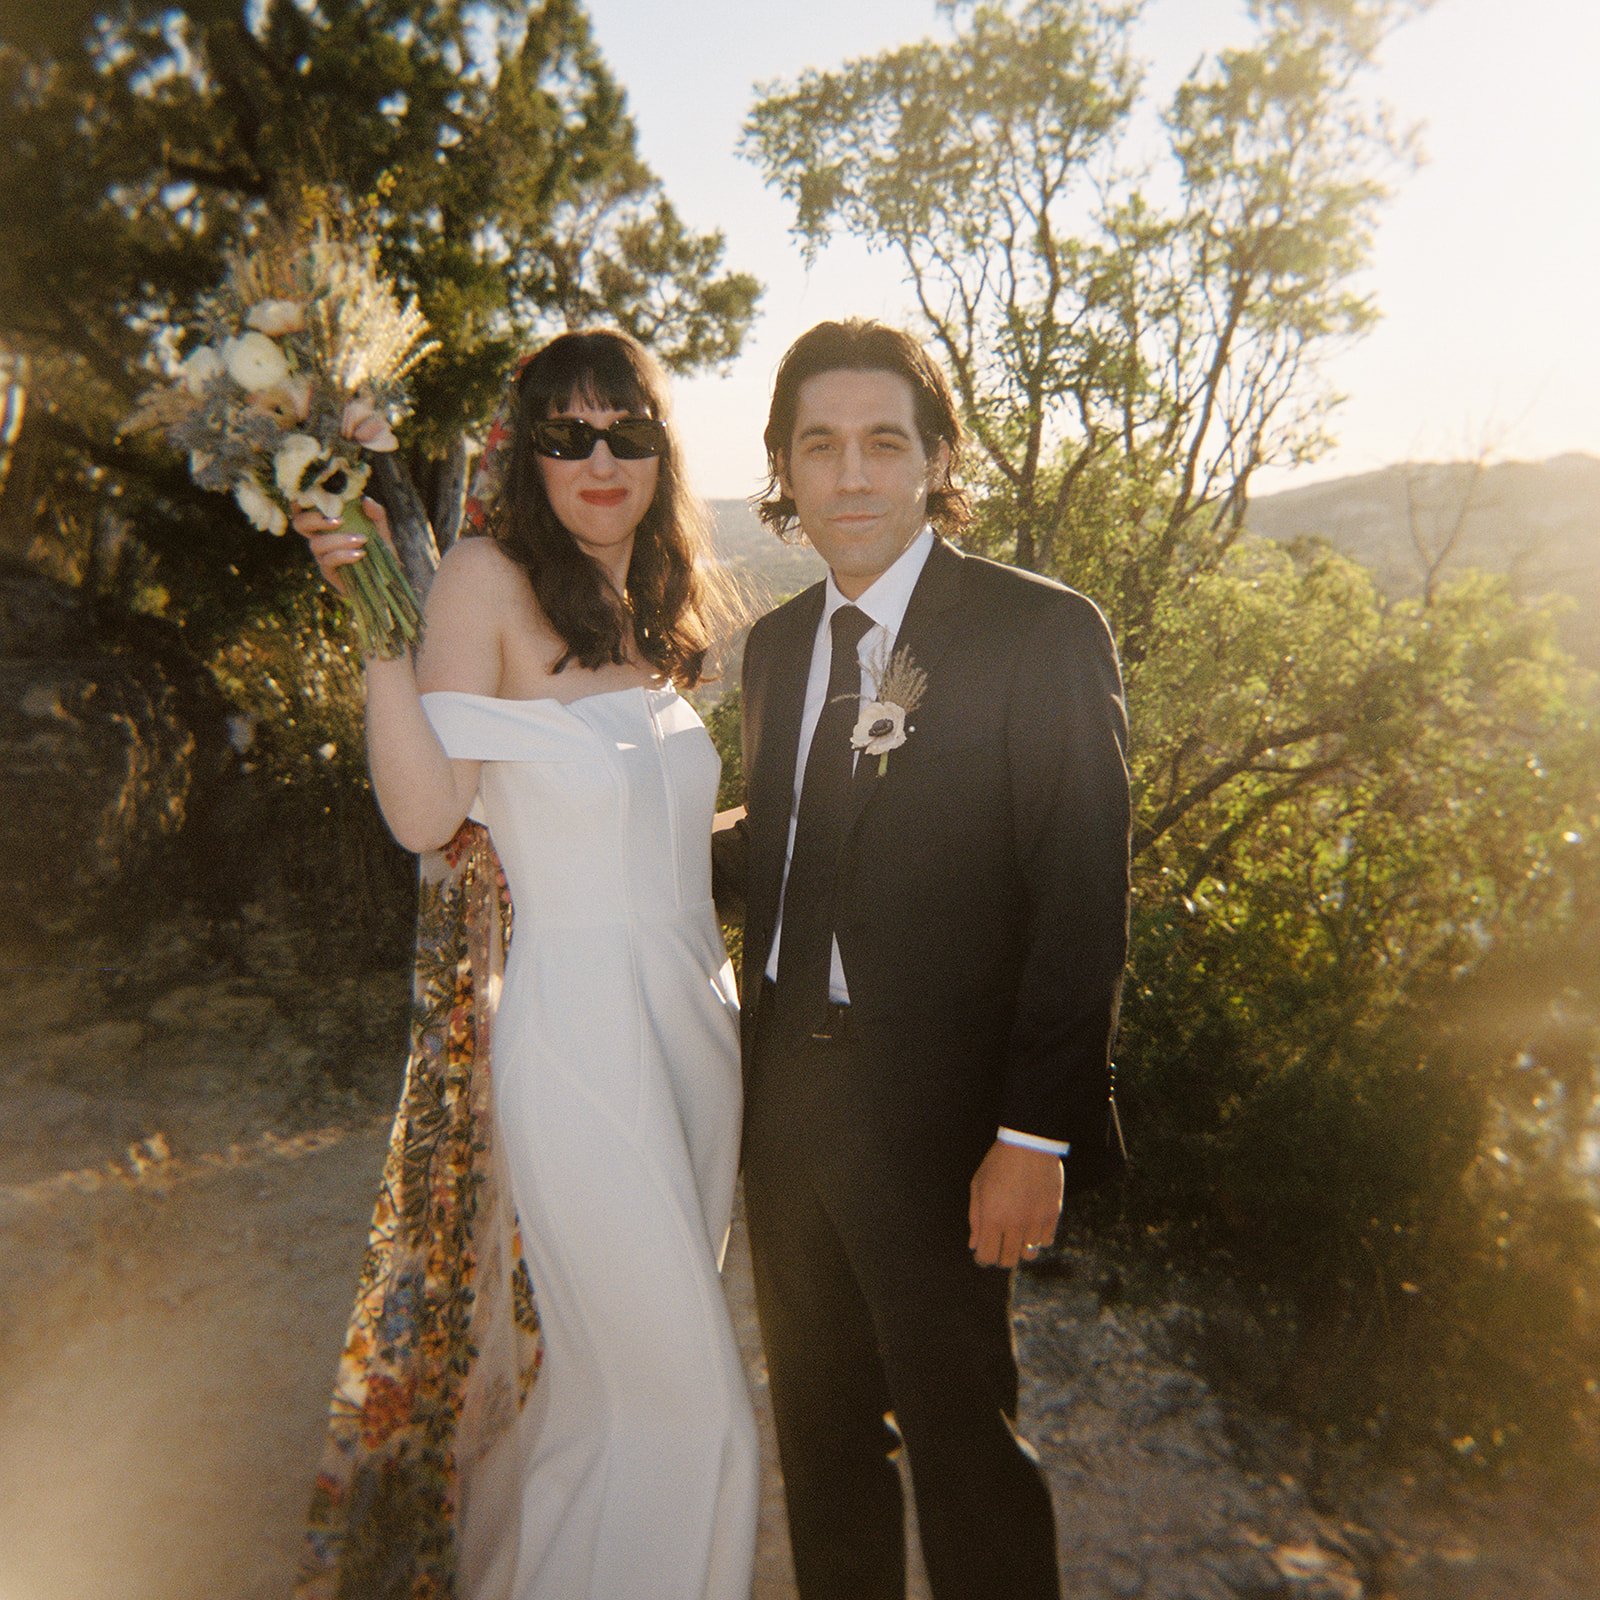 Best-Austin-Wedding-Photographers-Elopement-Film-35mm-Asheville-Santa-Barbara-Laguna-Gloria-30.jpg